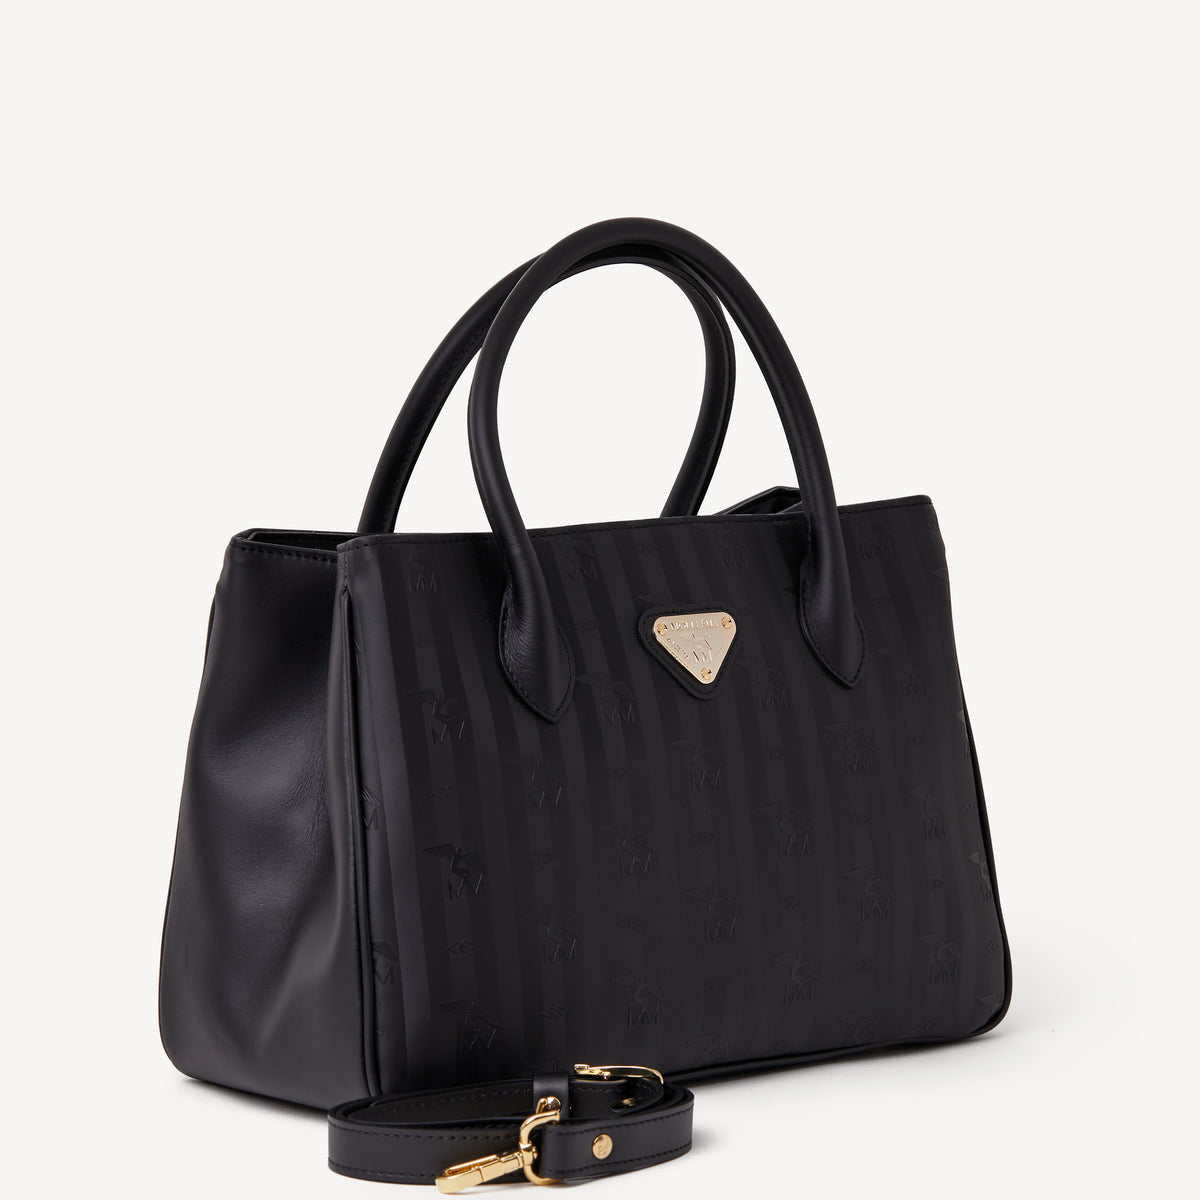 DONAT | Handtasche schwarz/gold - seitlich